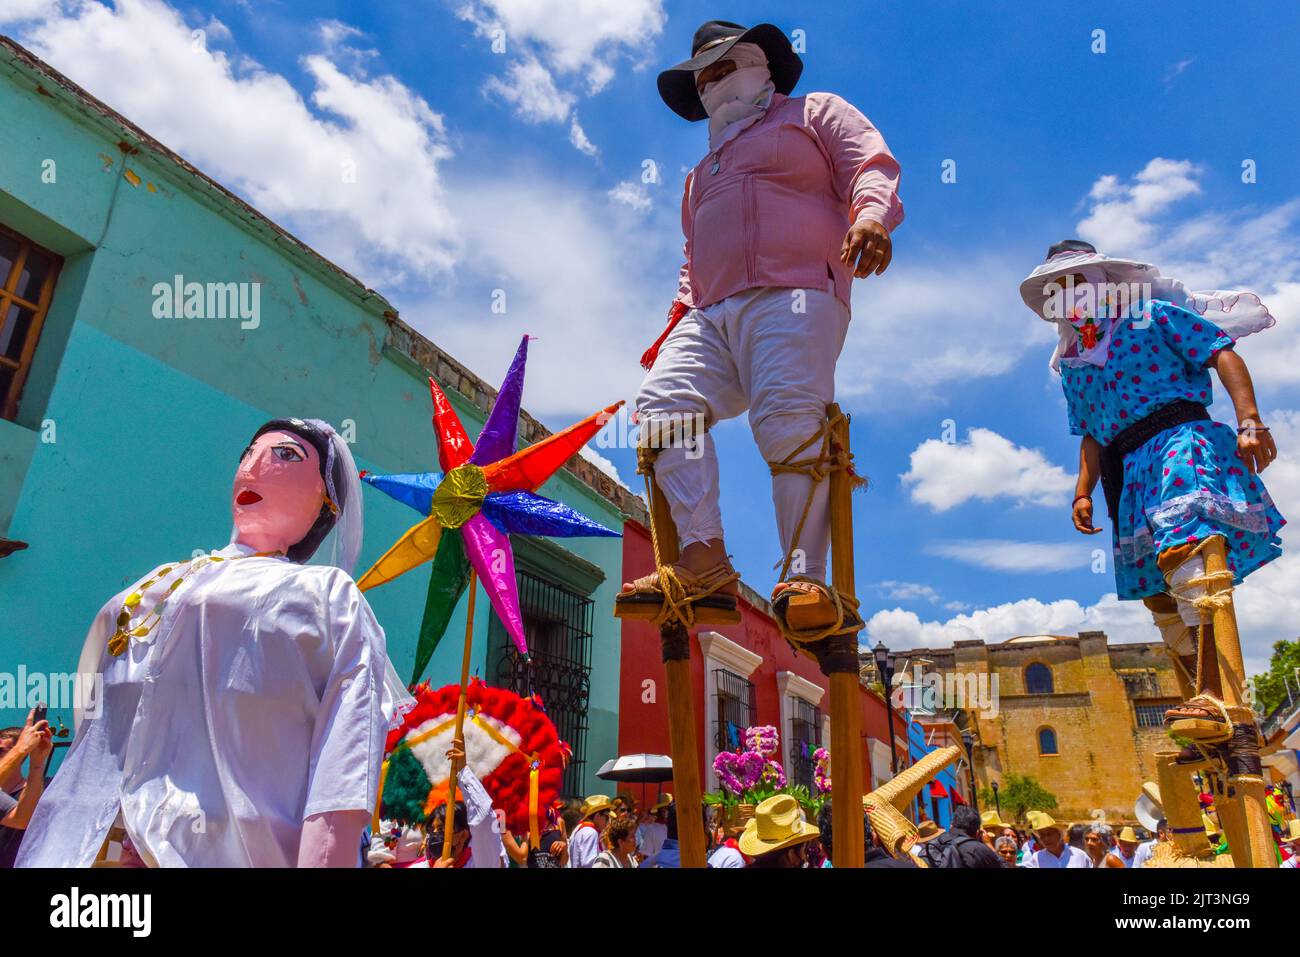 Mexican Wedding Parade called 'Calenda de Bodas' in the historical center of Oaxaca city, Mexico Stock Photo